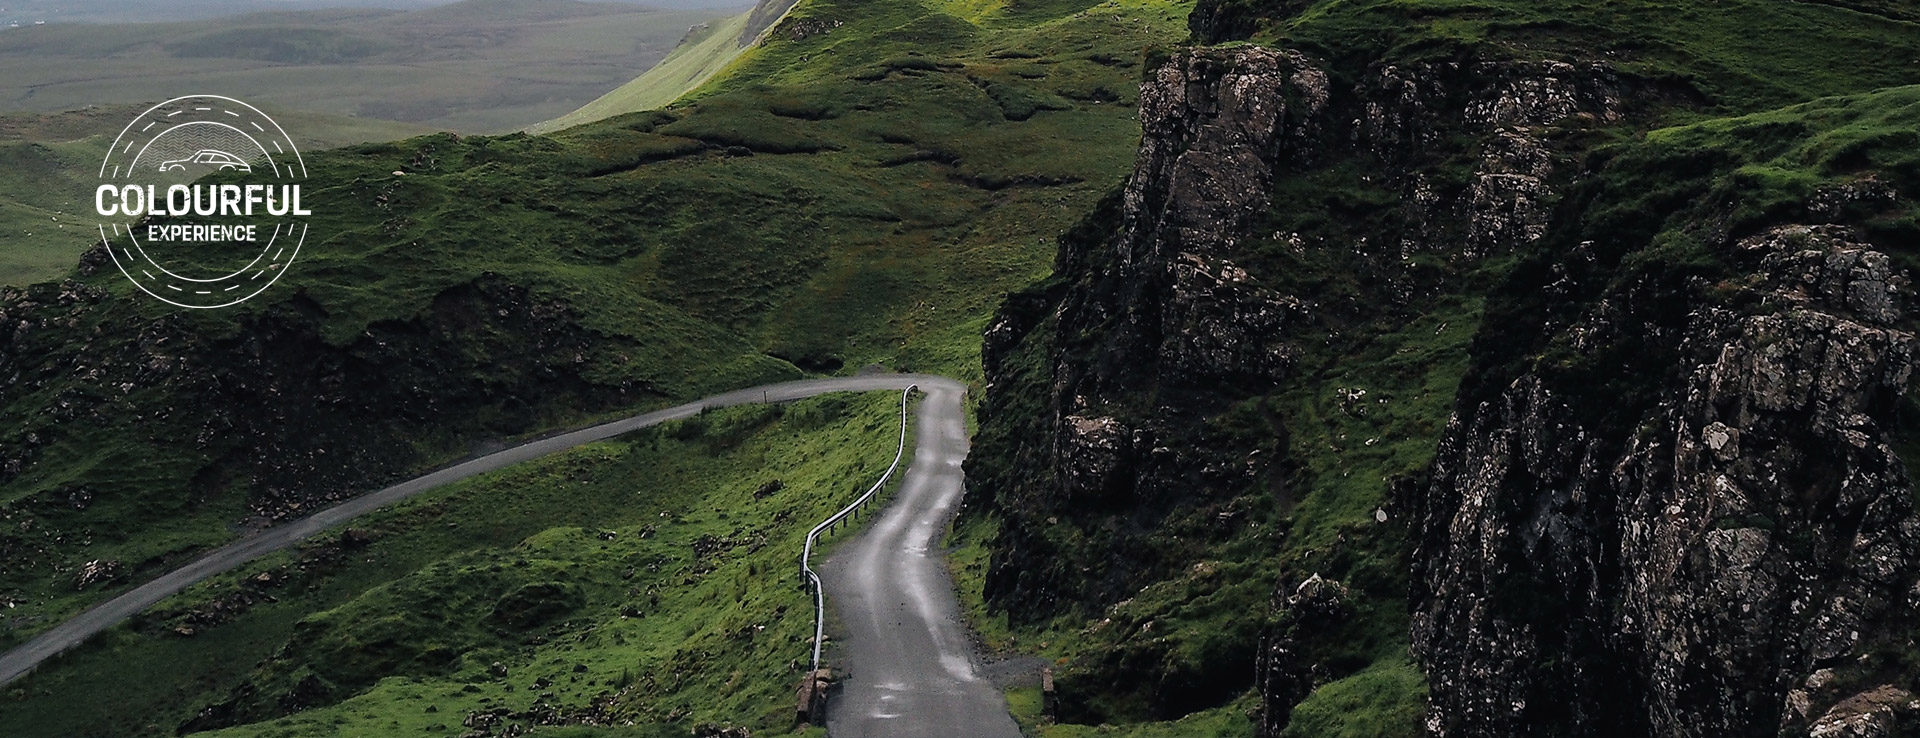 Winding mountainous Irish road passes rugged granite rocks